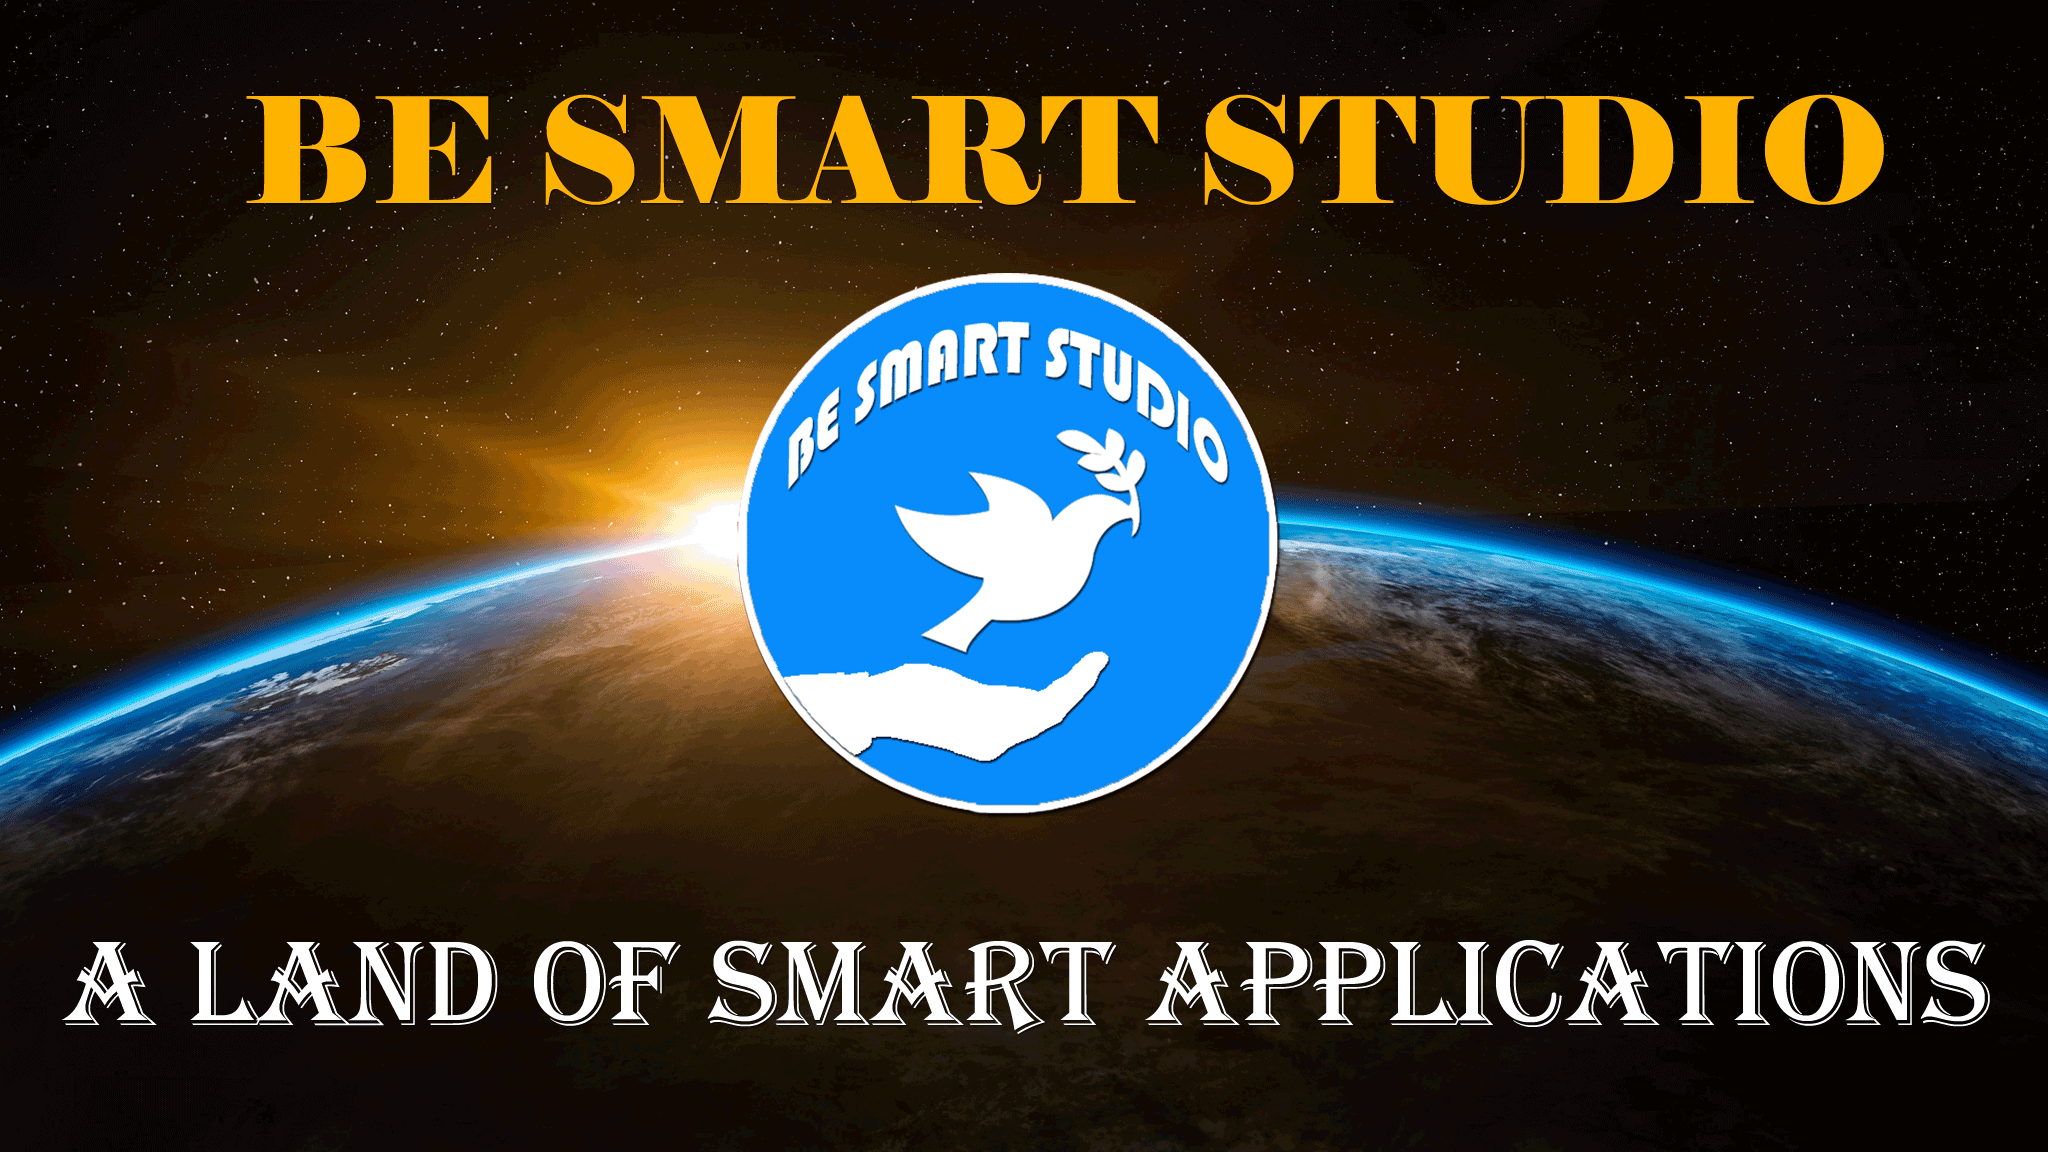 Be Smart Studio Apps Home Screen